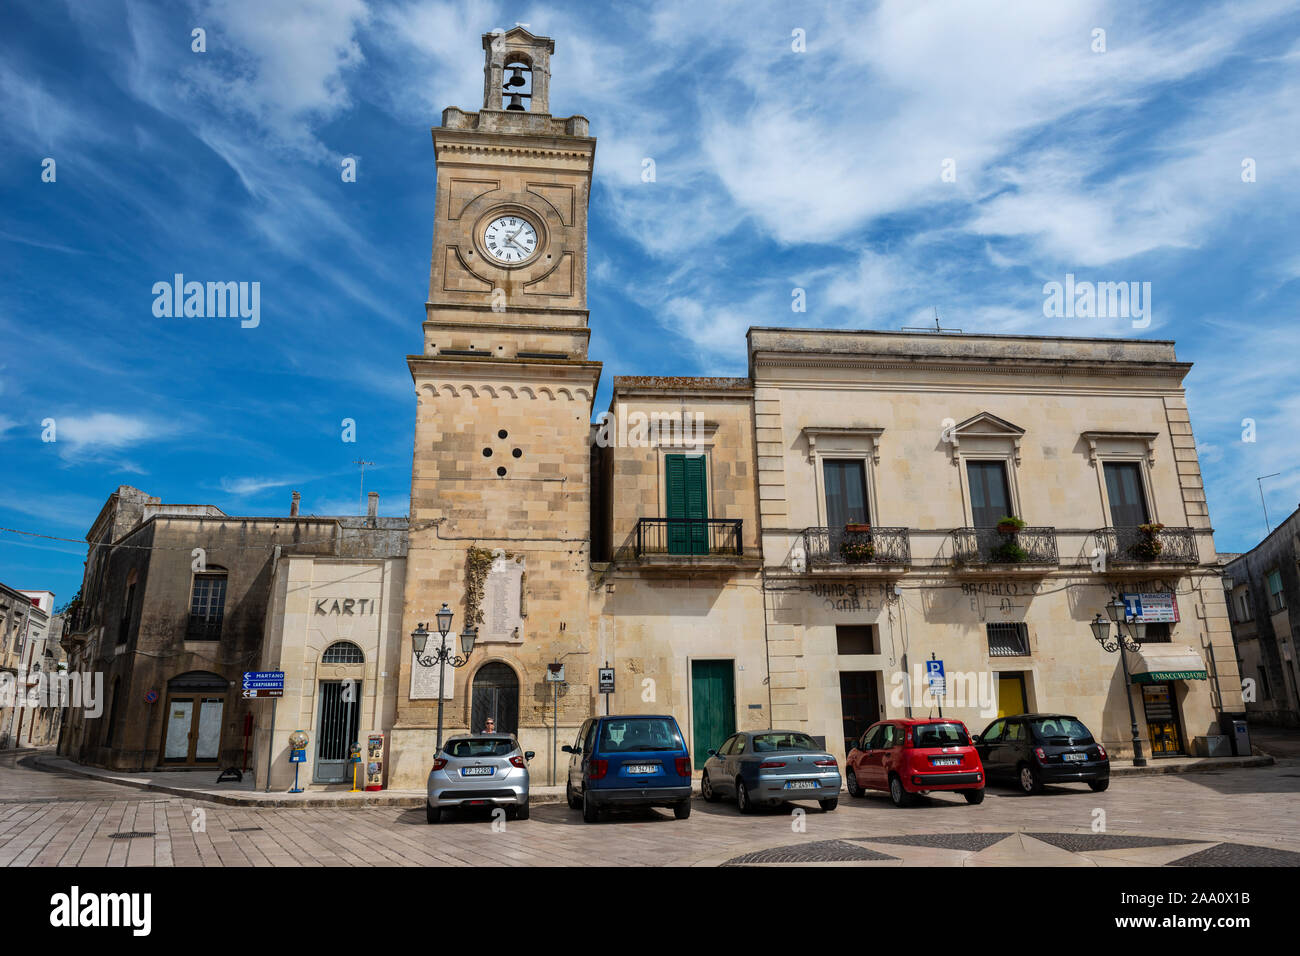 Clocktower on Piazza Sant'Antonio in Castrignano de' Greci in Apulia (Puglia) in Southern Italy Stock Photo